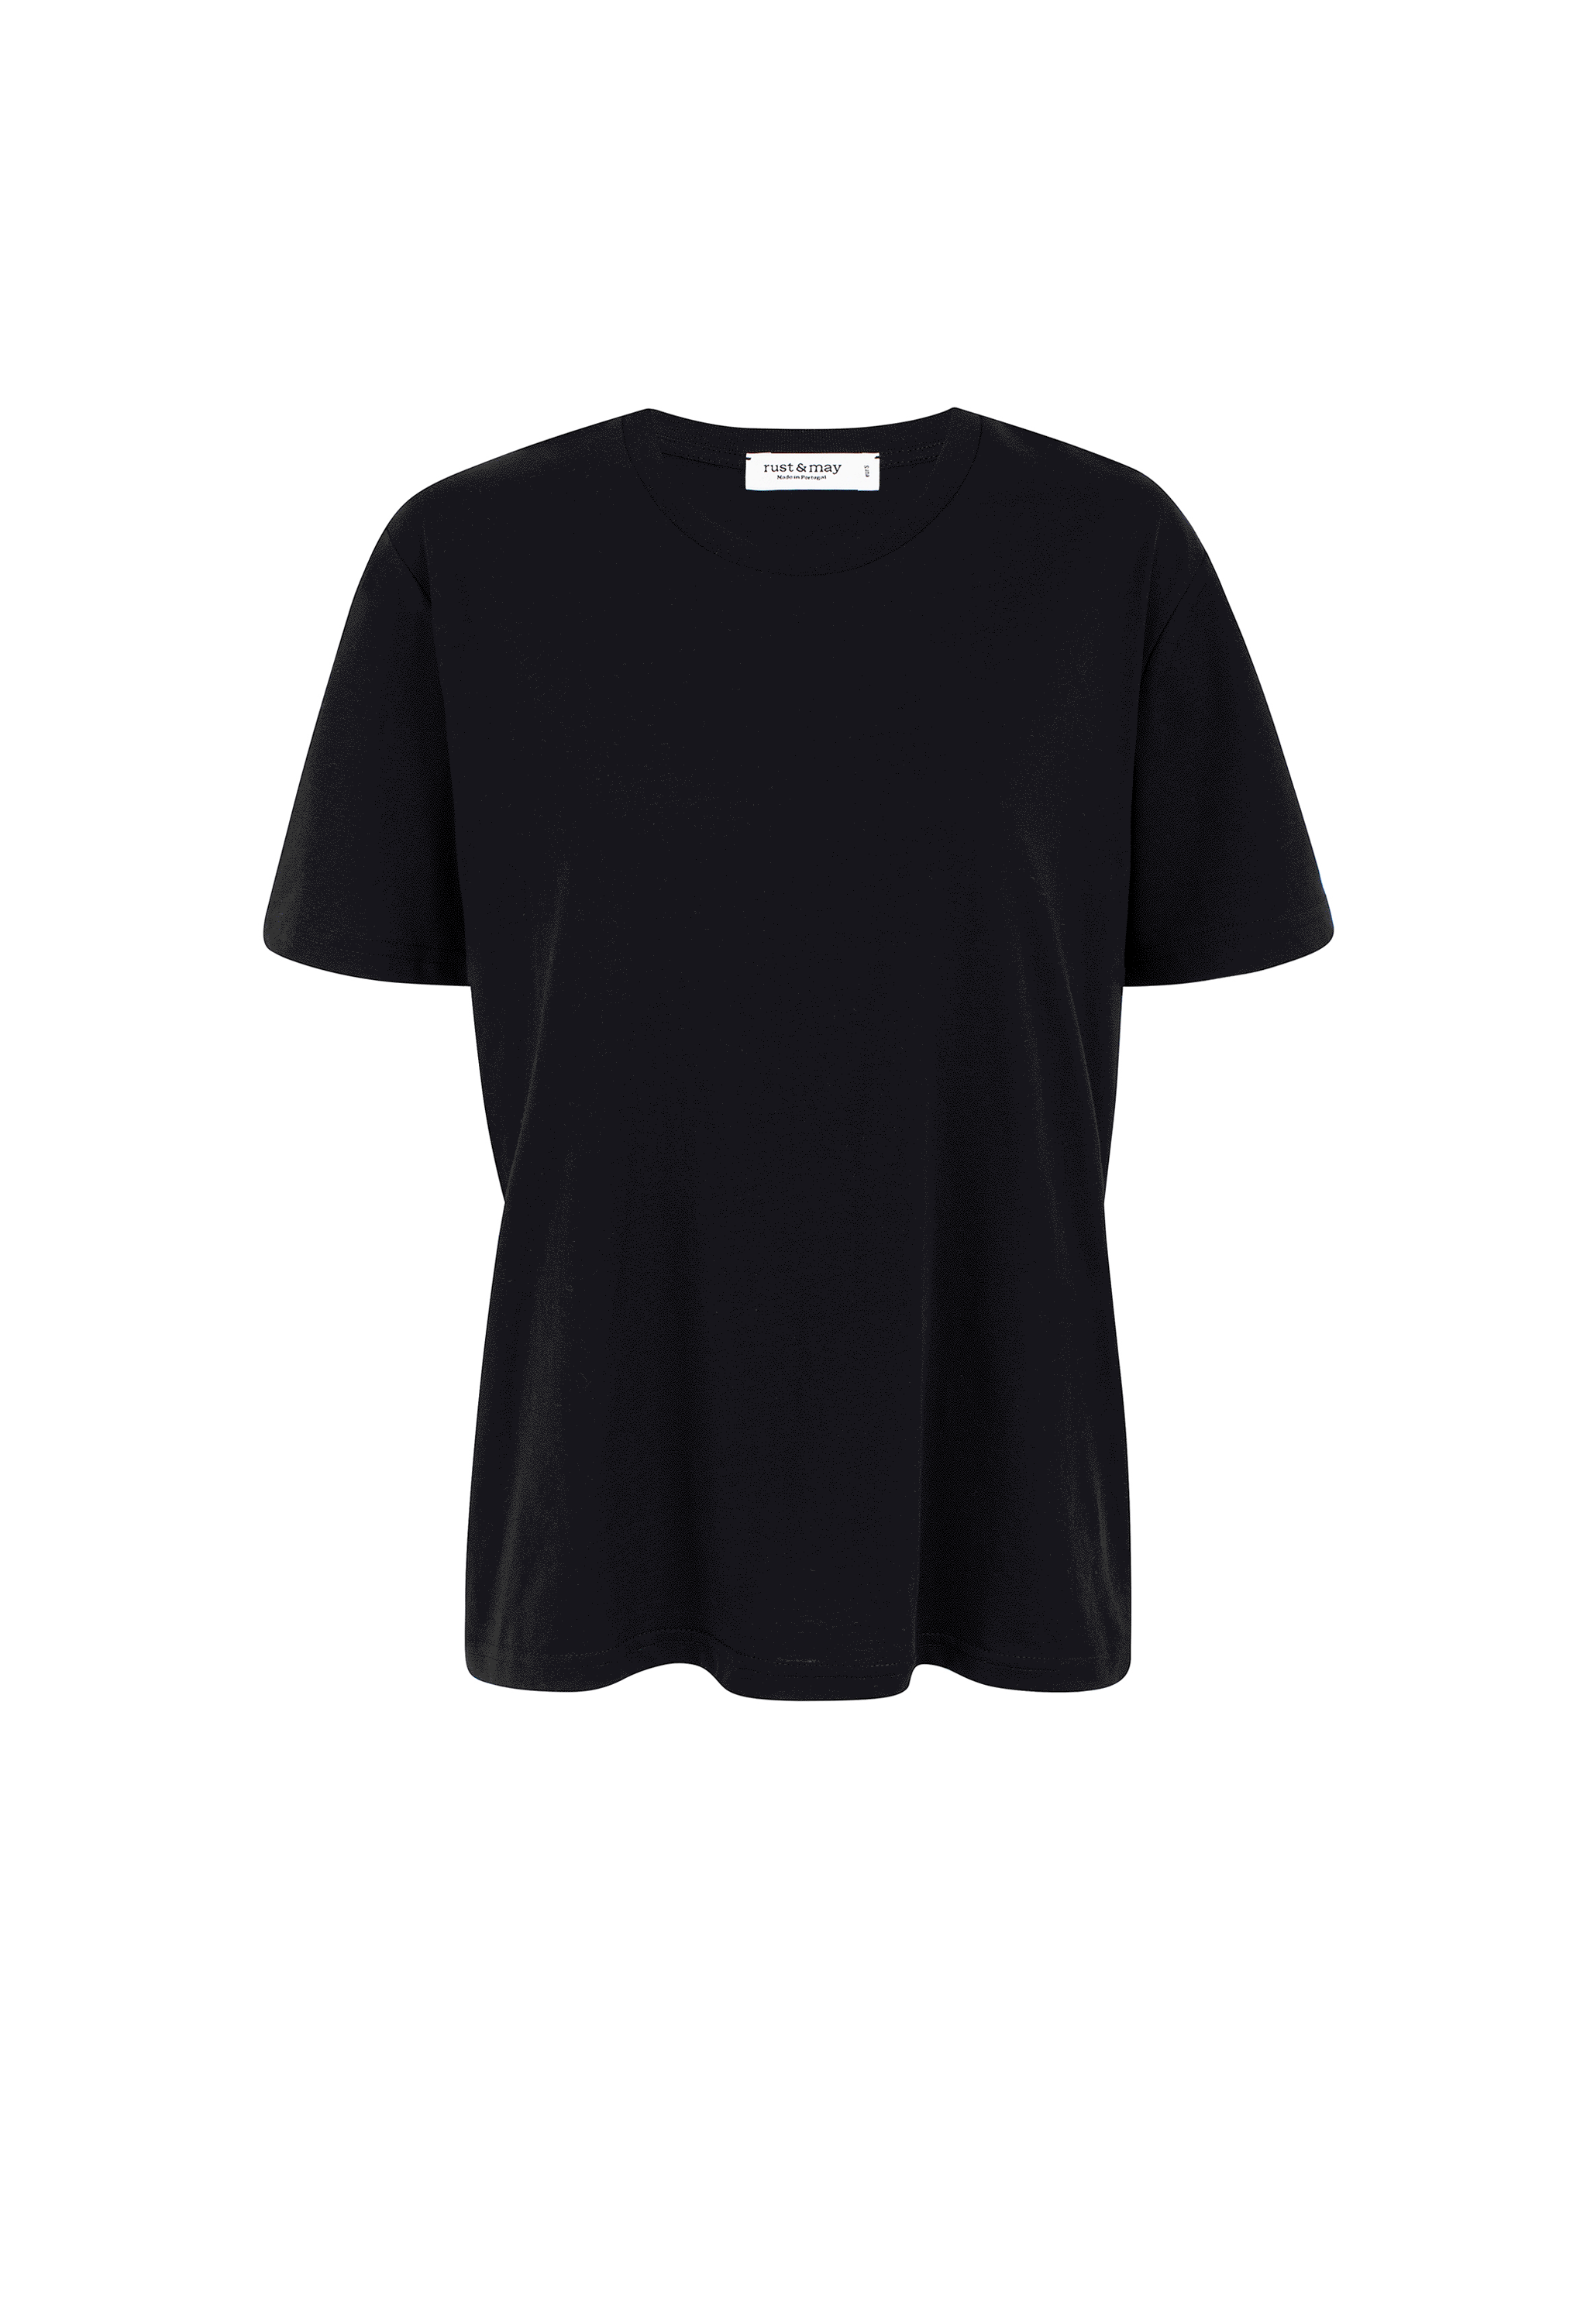 Basic Unisex T-shirt (Custom Option)